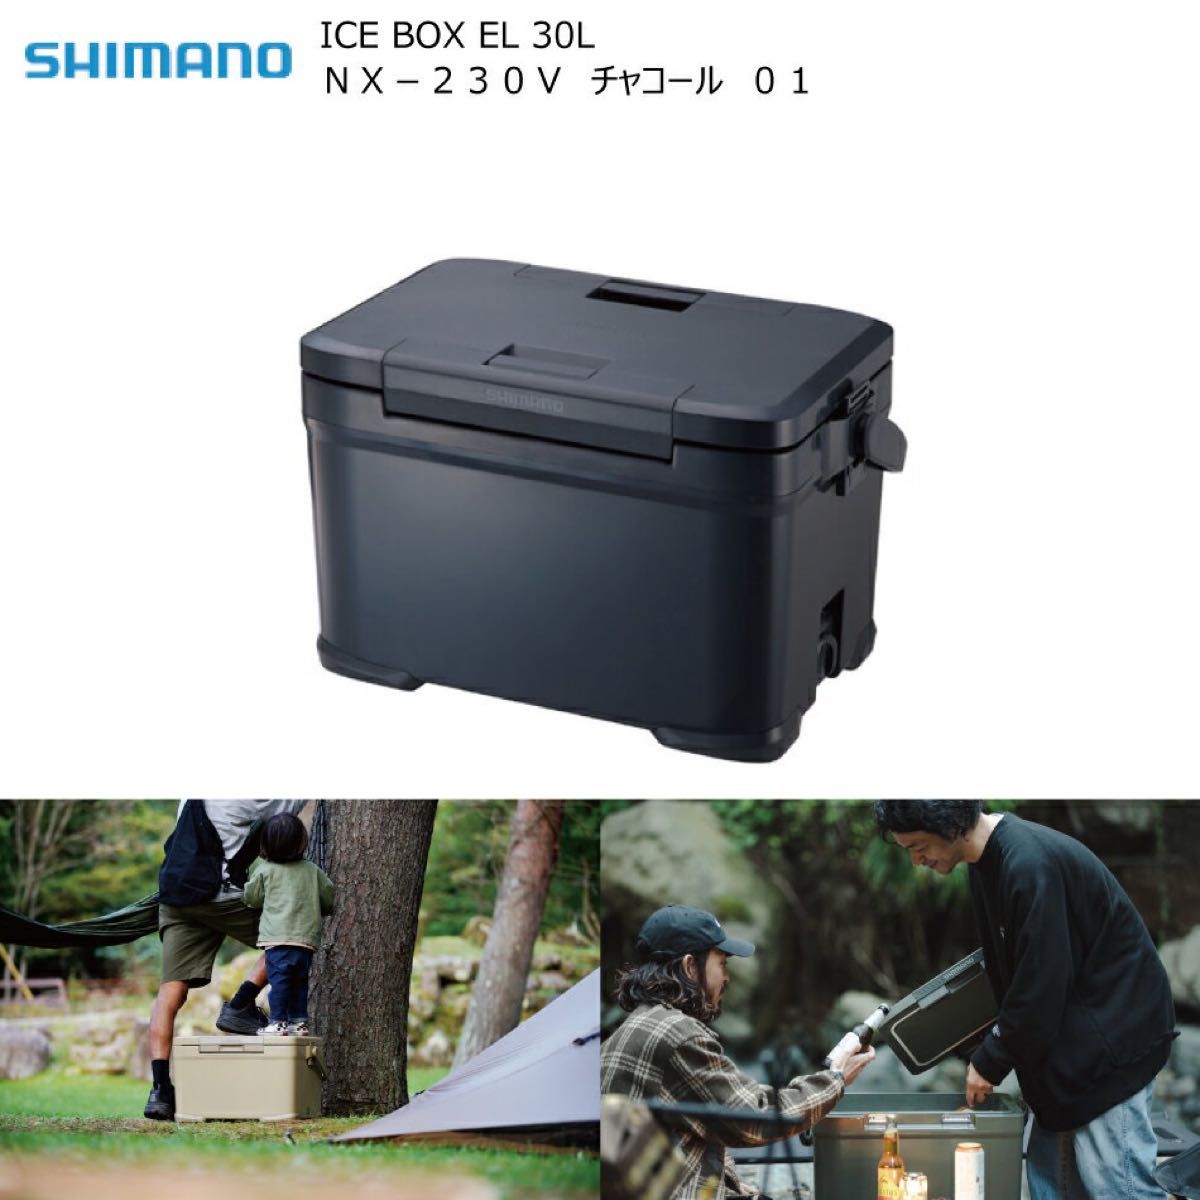 蔵 シマノ クーラーボックス 30L アイスボックスEL ICEBOX EL NX-230V